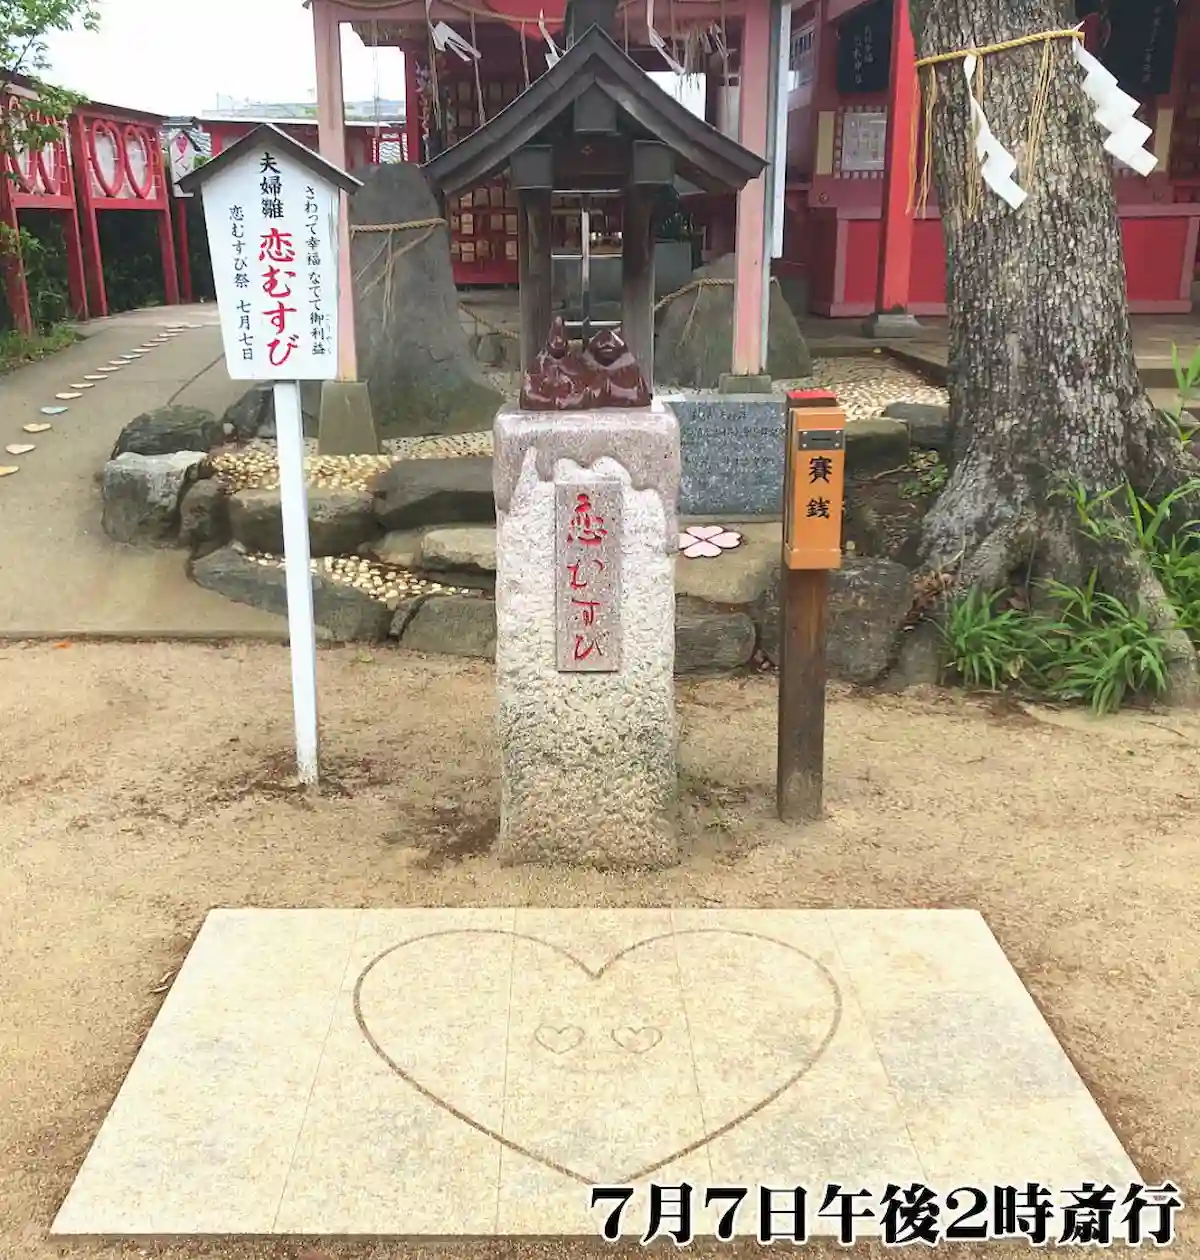 恋木神社で「恋むすび祭」7月7日開催　むすび短冊に願い事を書き奉納する祀り